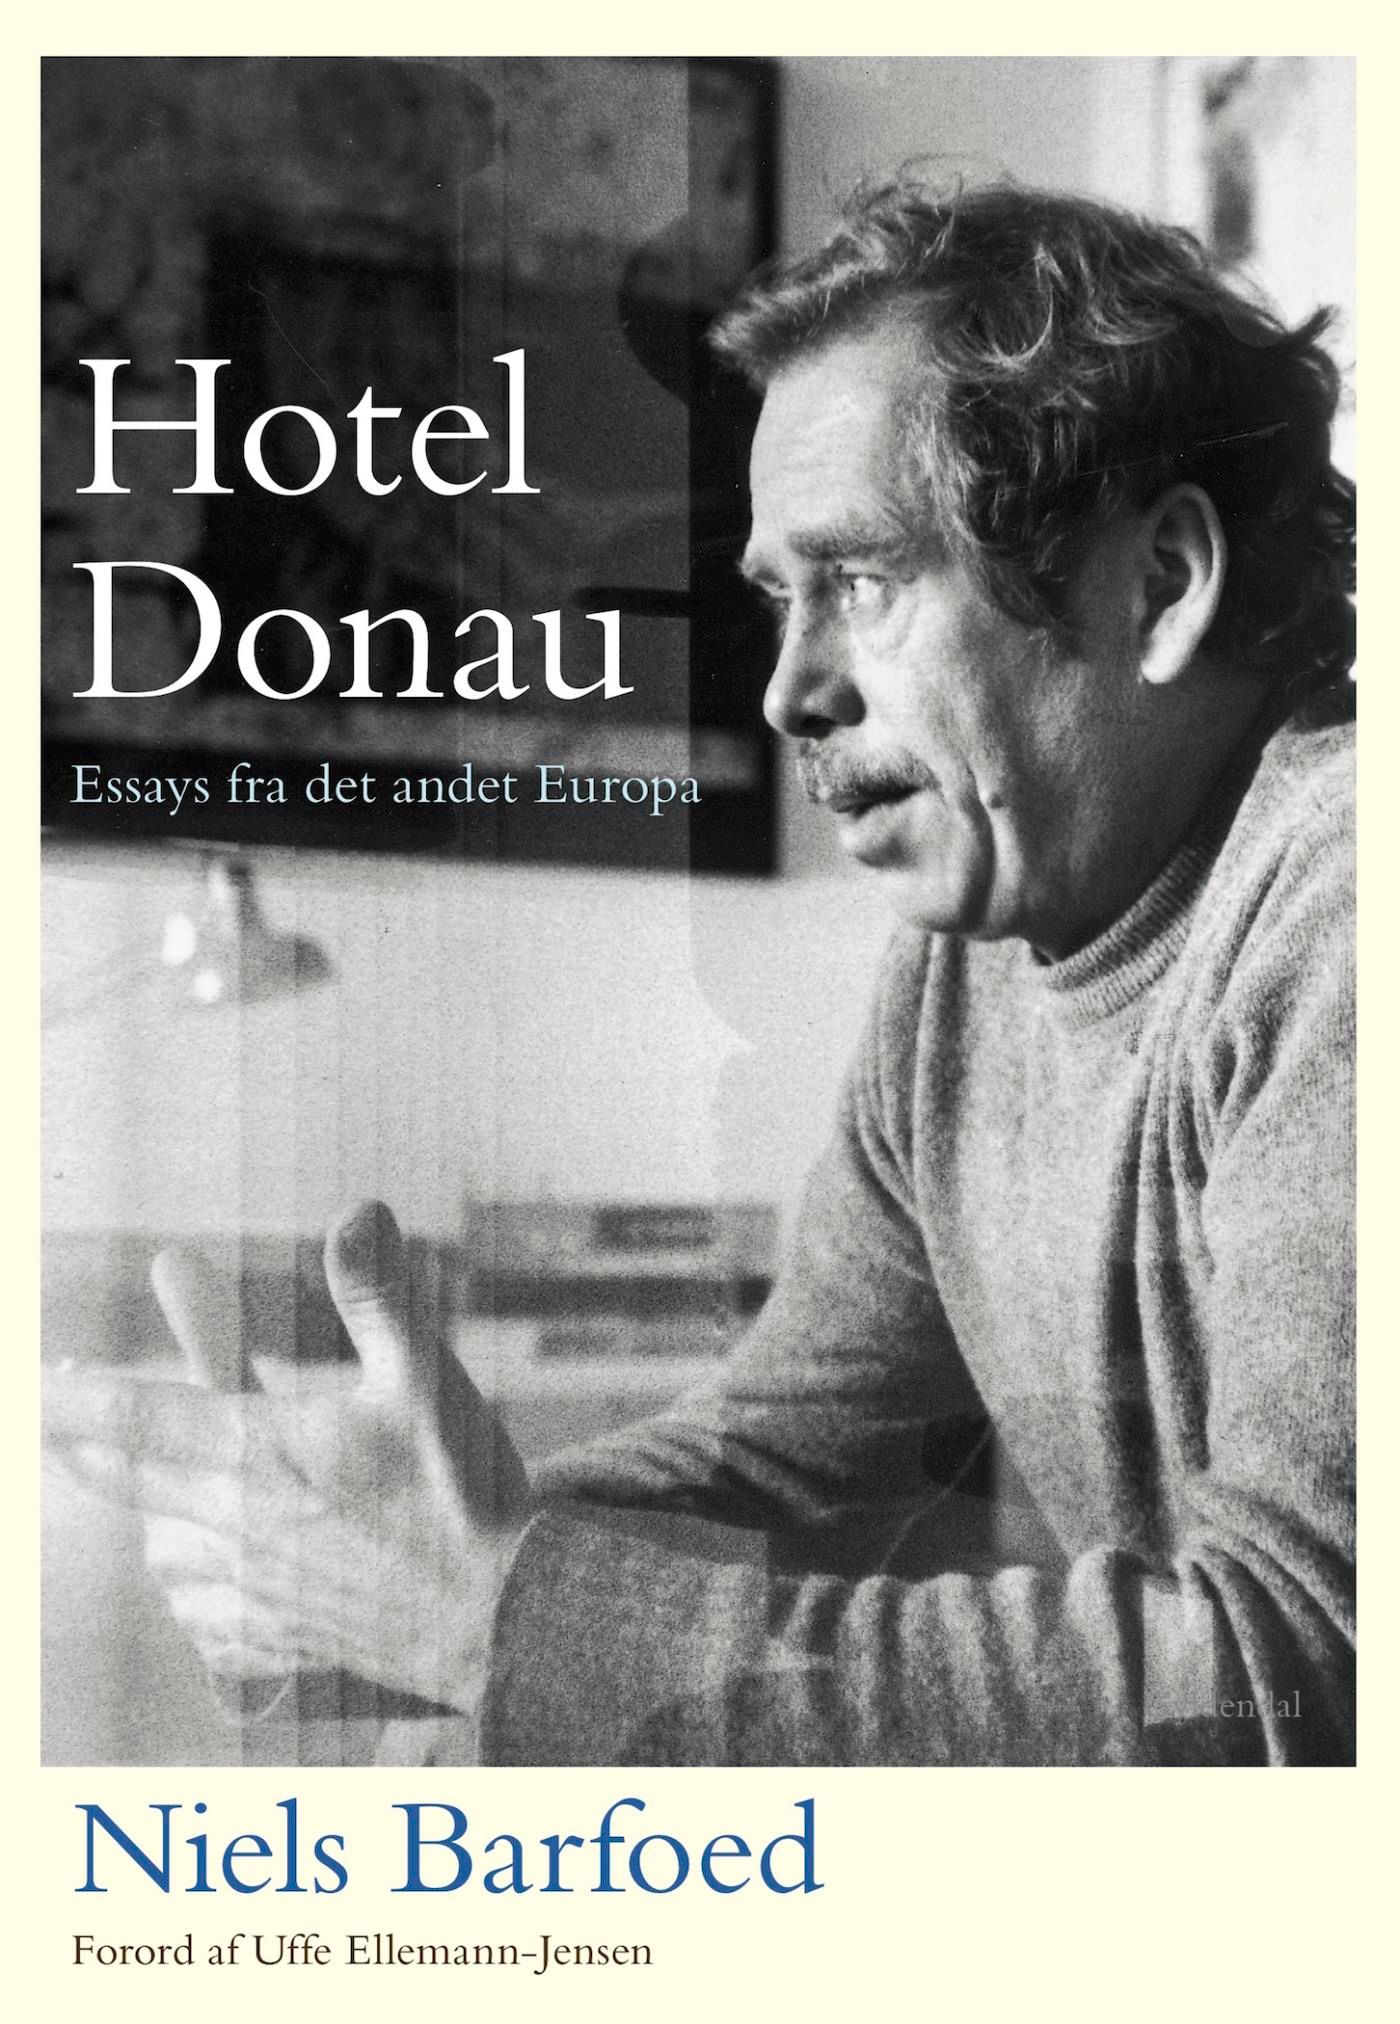 Hotel Donau, e-bog af Niels Barfoed